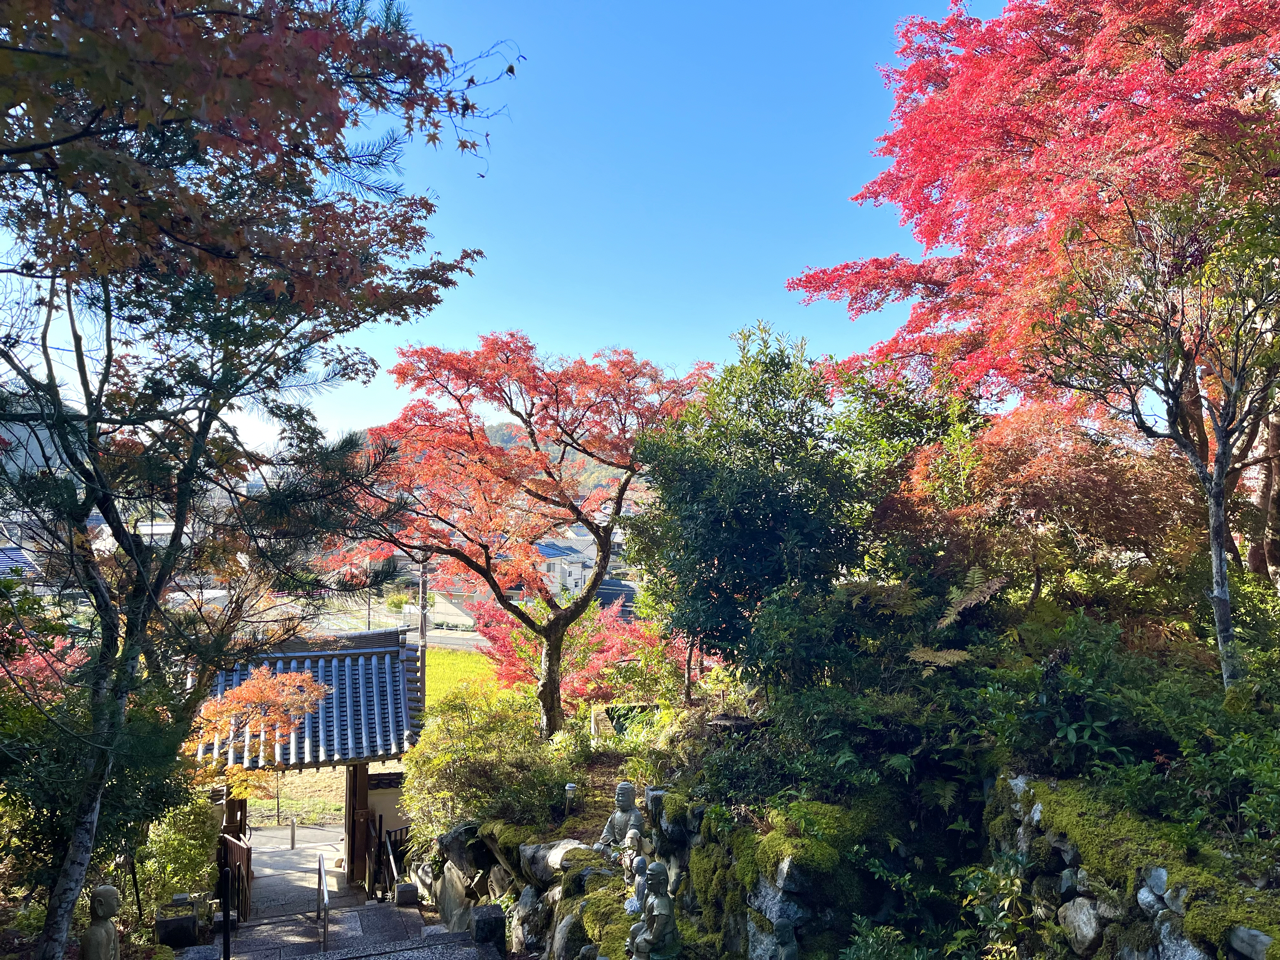 Le Temple bouddhiste Shingon Sanmyō-in (三明院) et la magie de ses Érables Rouges flamboyant Koyo 紅葉